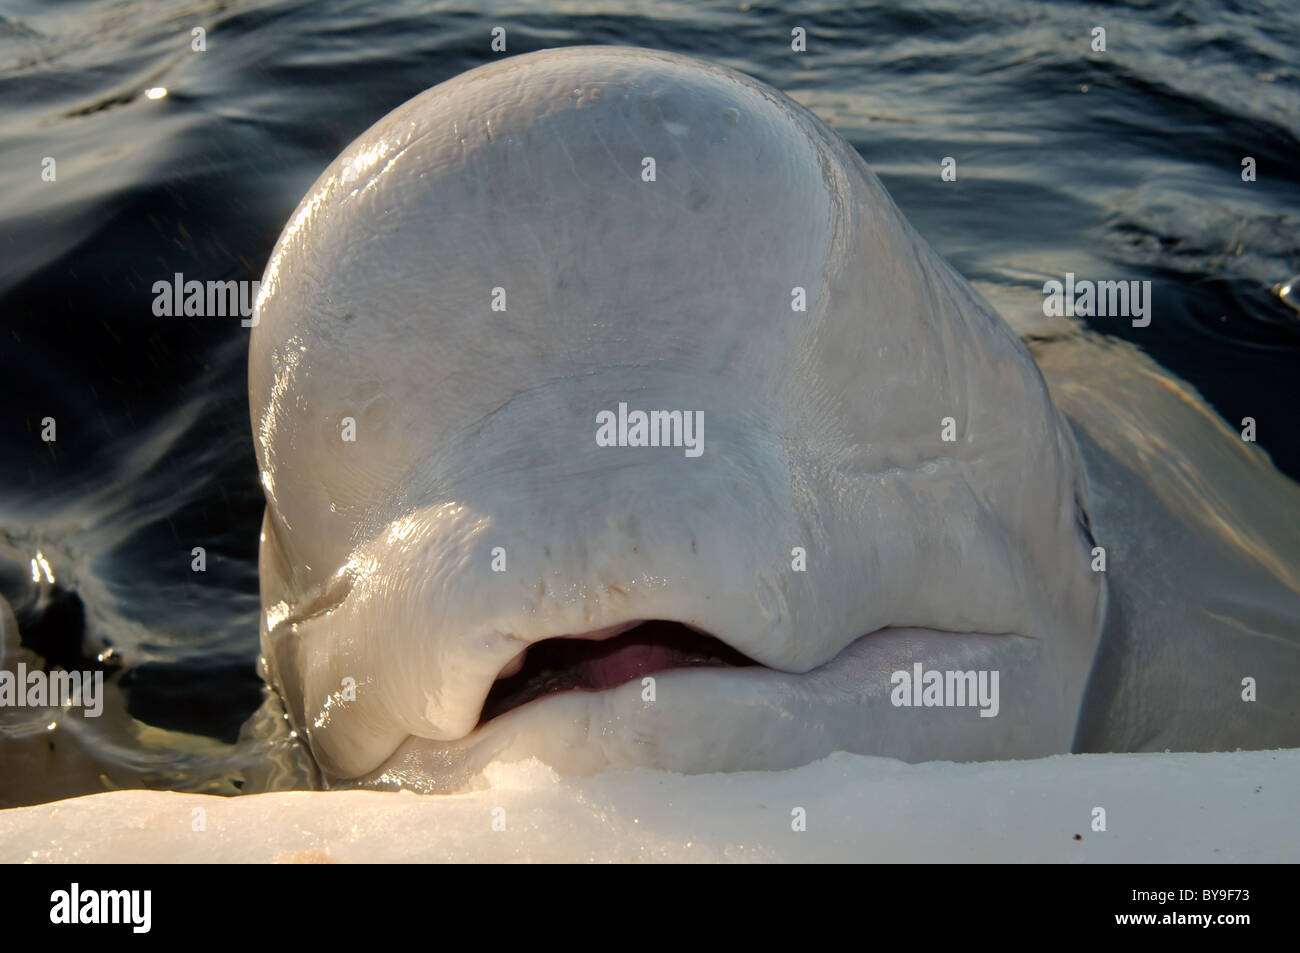 Portreit of the Beluga,  white whale  (Delphinapterus leucas) Stock Photo